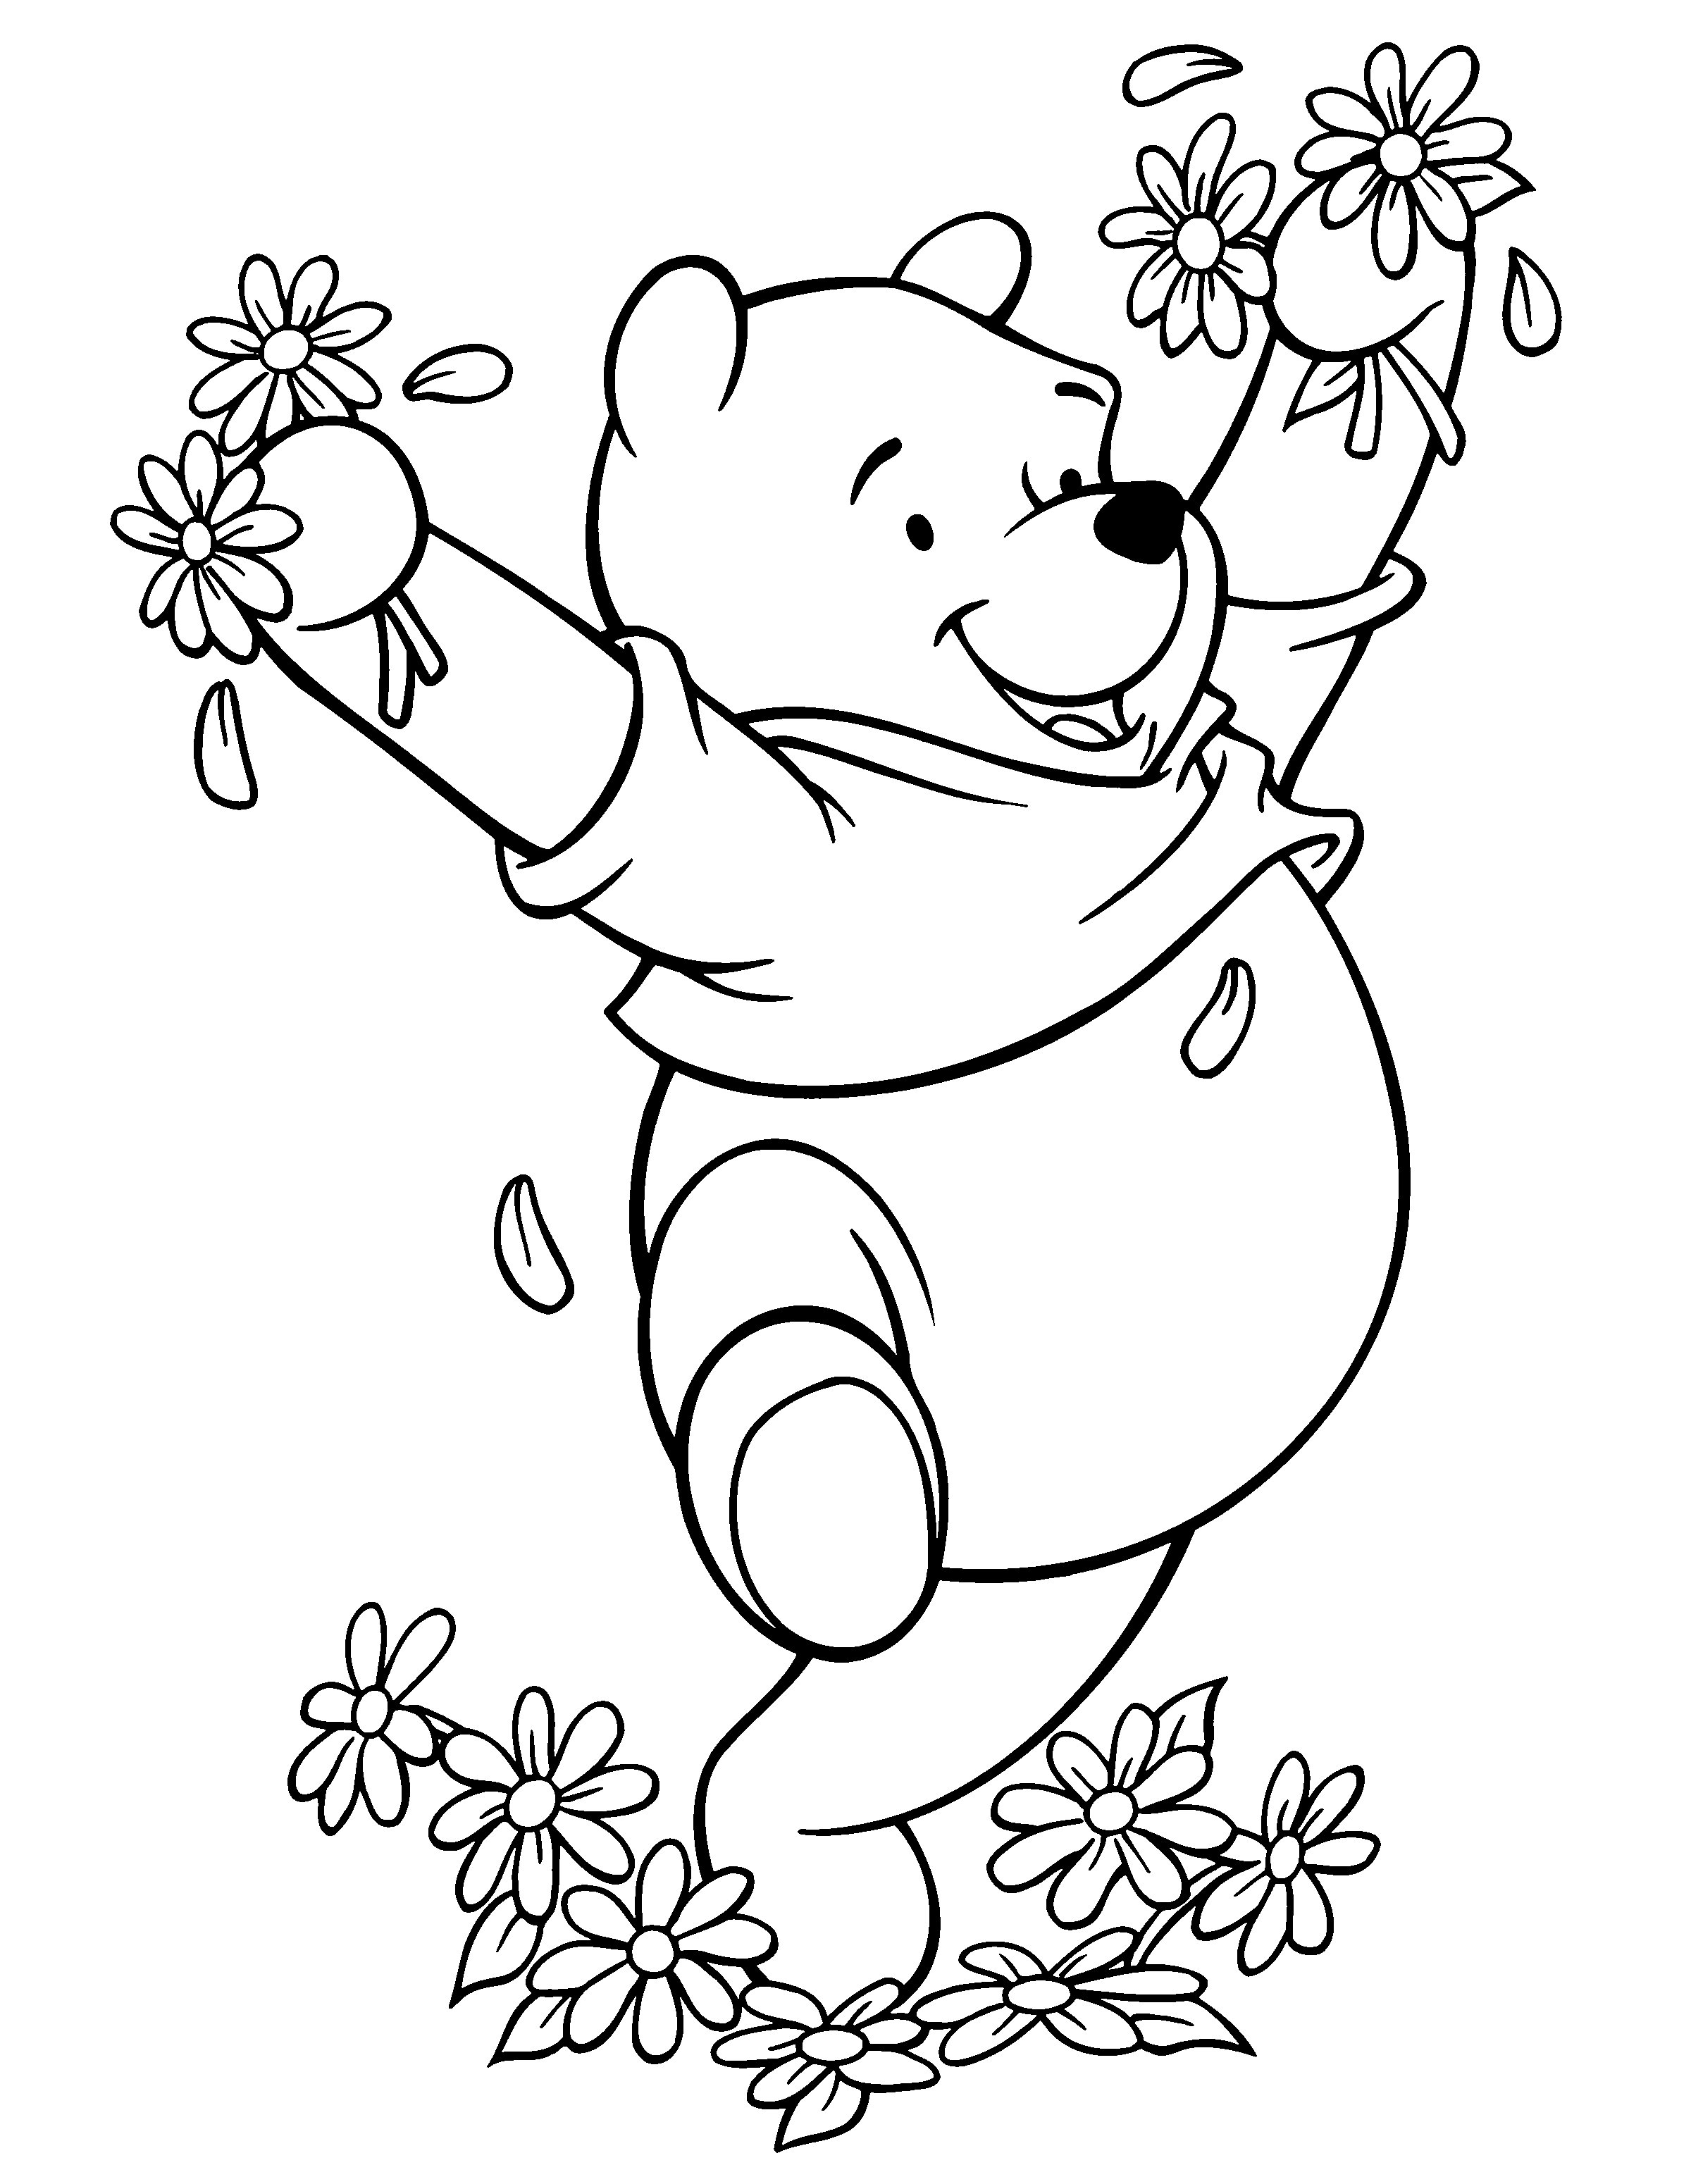 boyama-sayfasi-winnie-the-pooh-hareketli-resim-0104